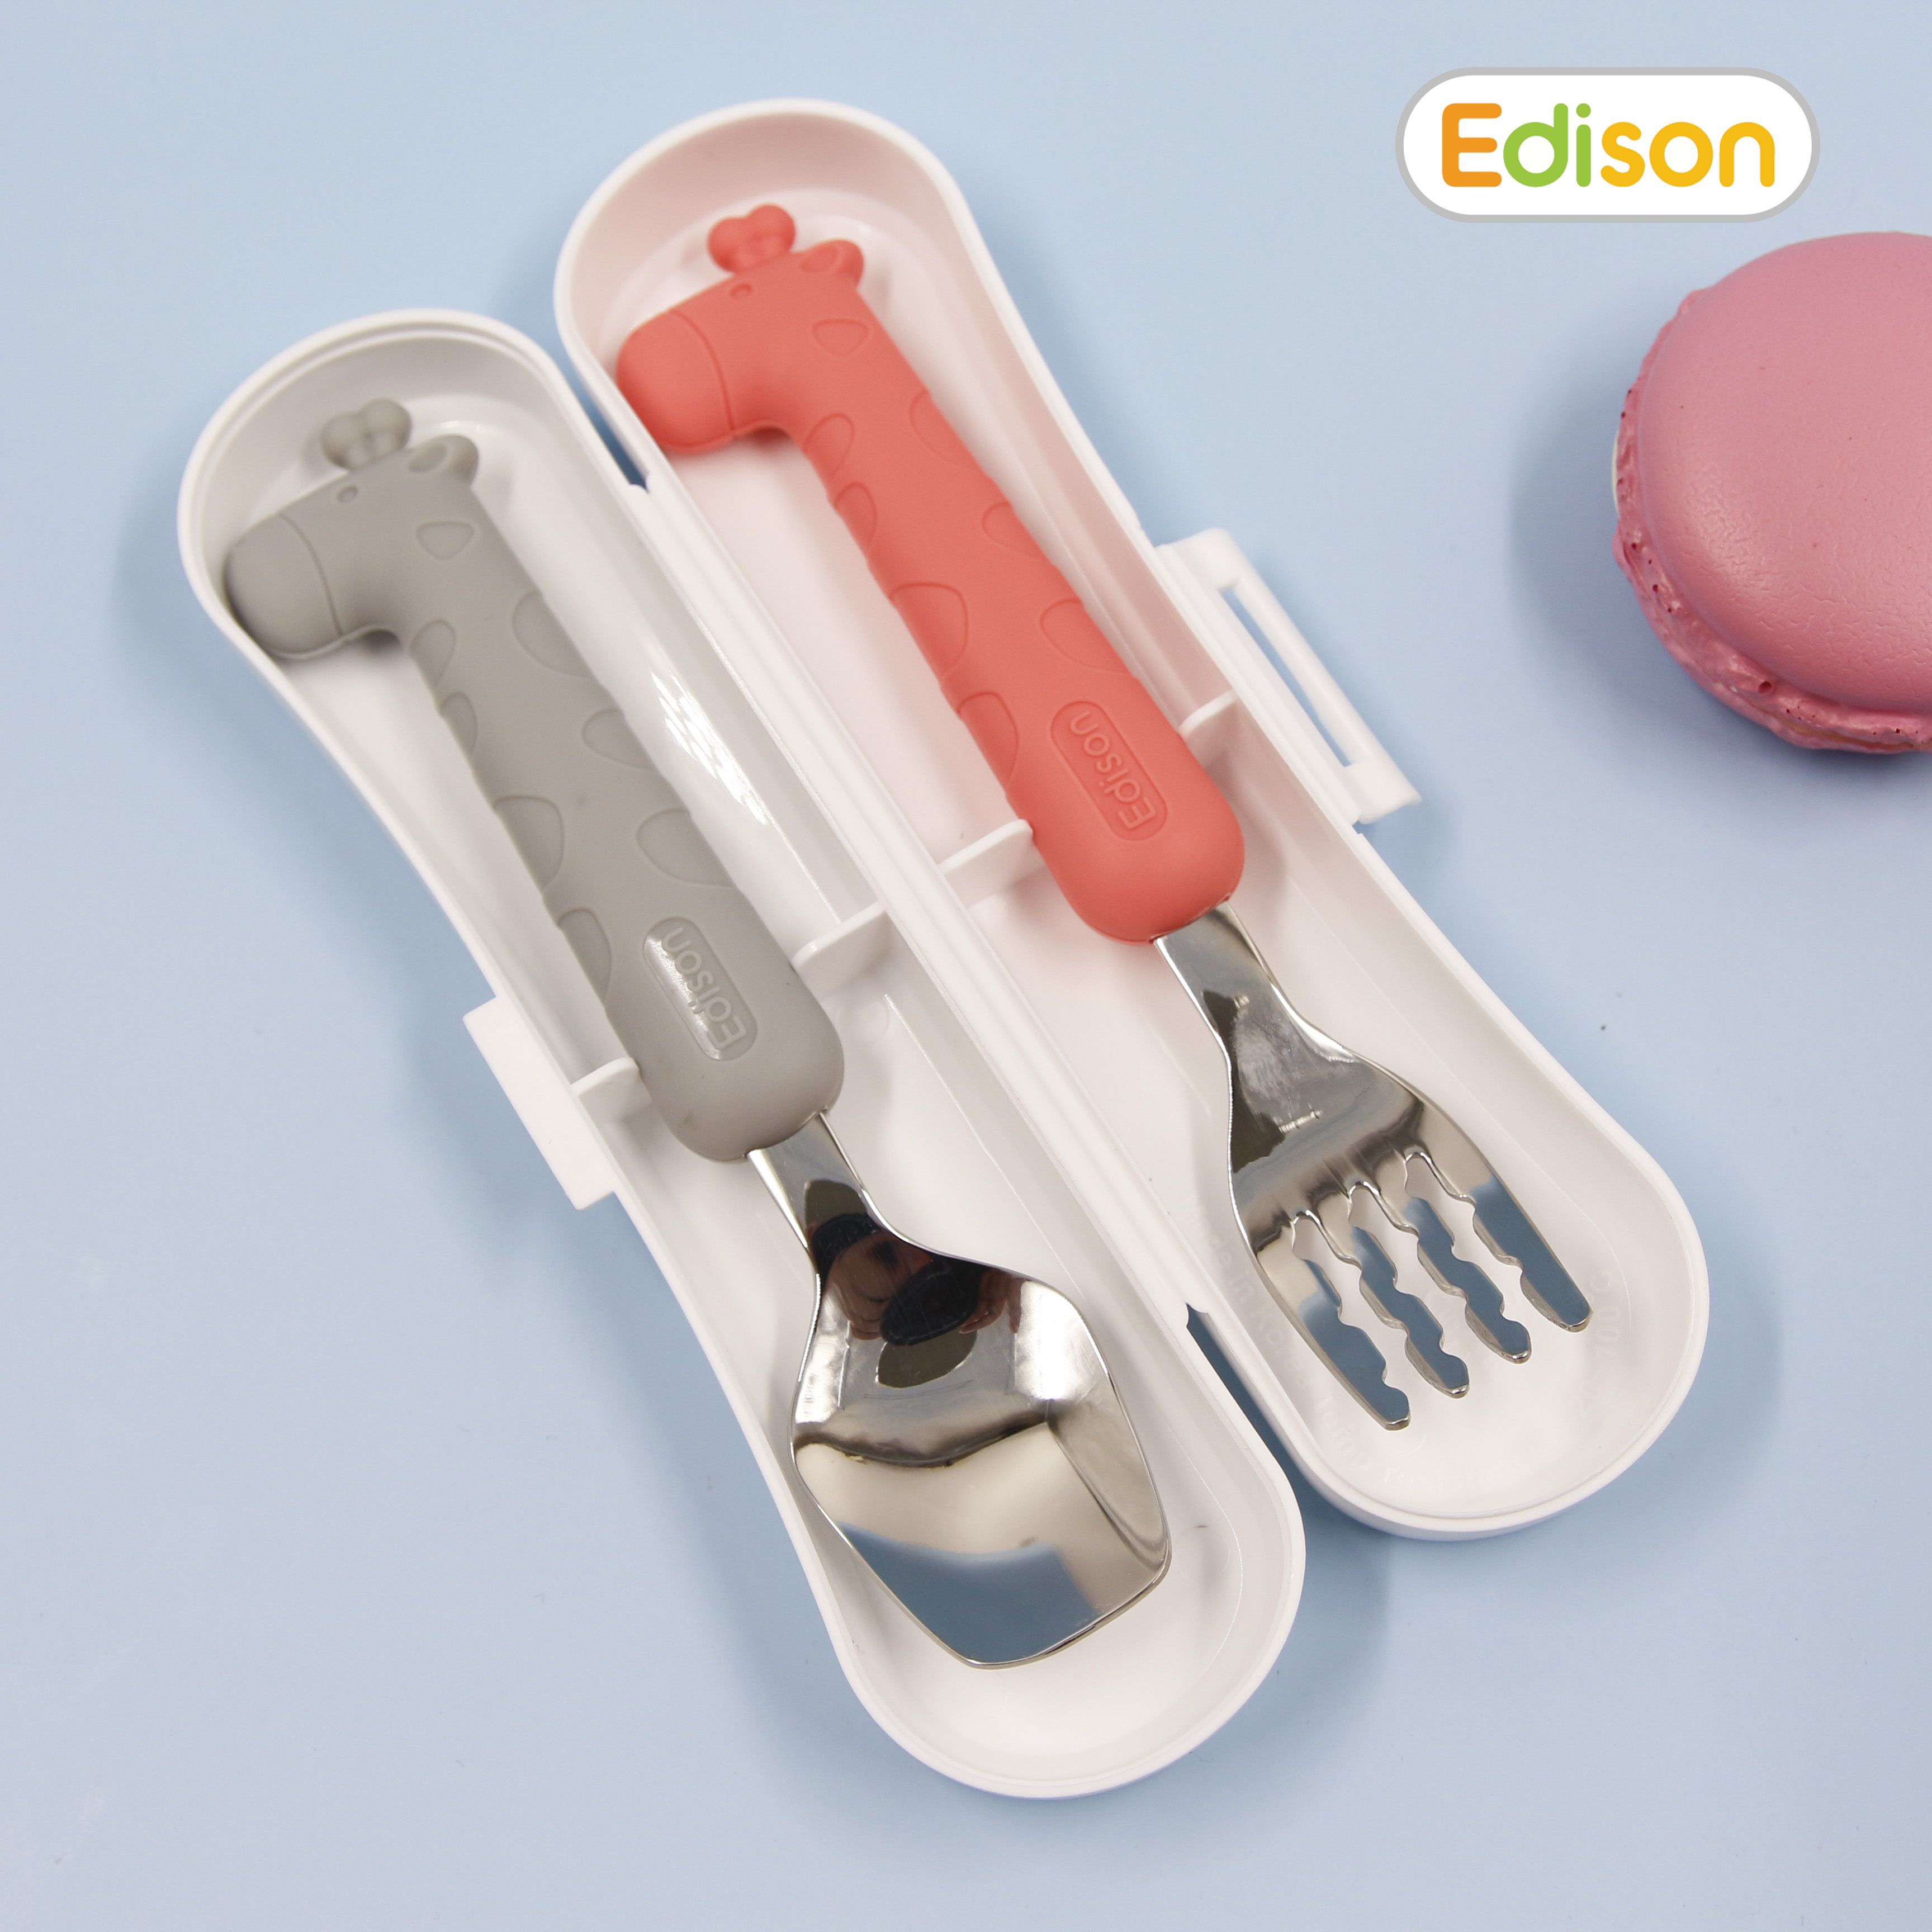 Bộ thìa nĩa ăn dặm cho bé inox 304 chống gỉ bọc silicon BPA Free có hộp đựng hình hươu cao cổ Edison chính hãng Hàn Quốc